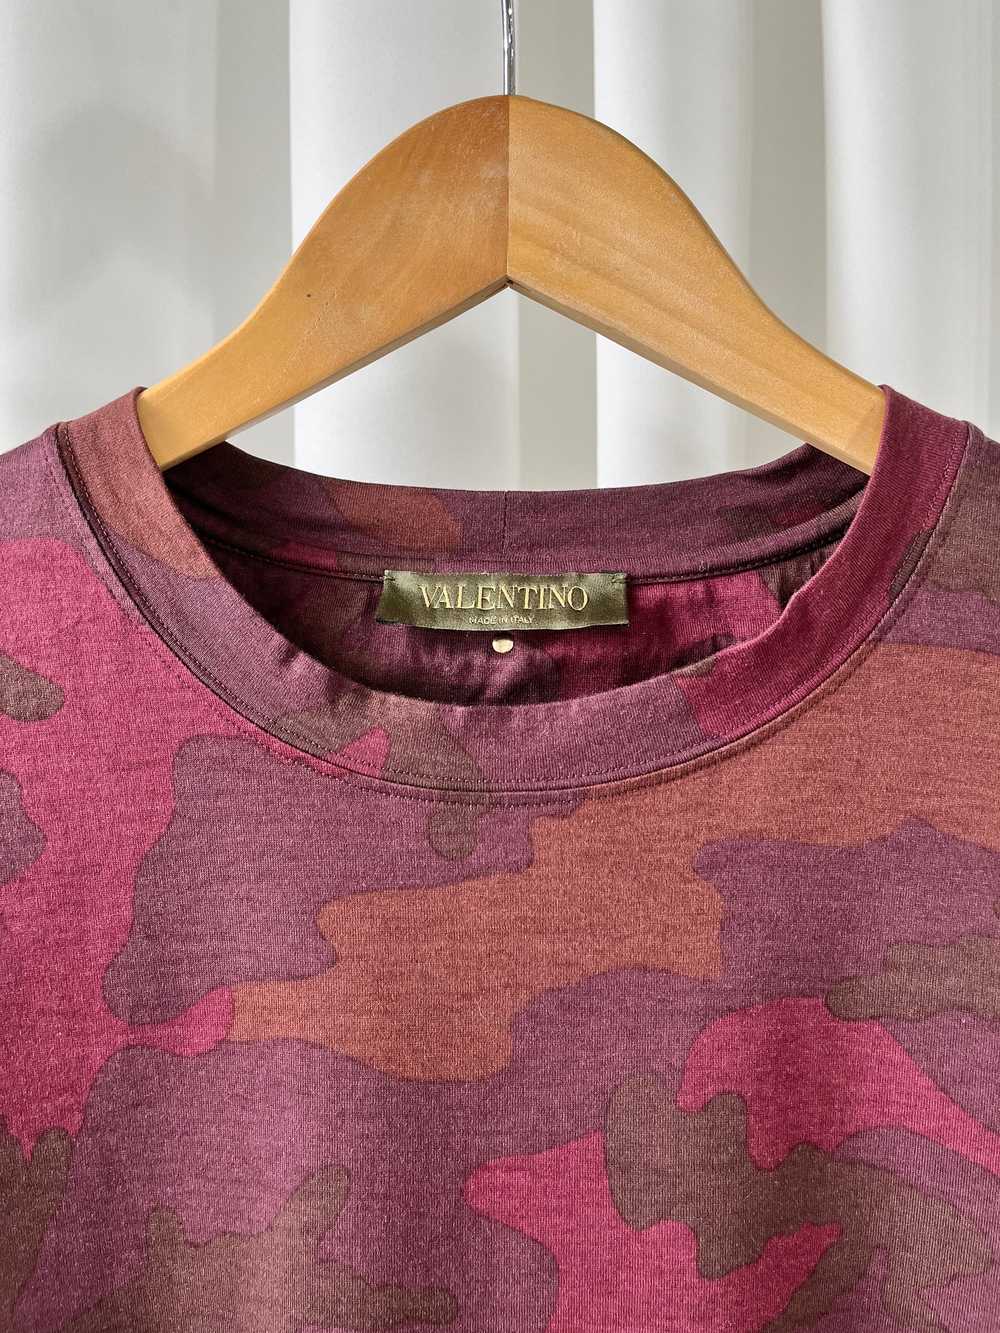 Valentino Burgundy Camo T-Shirt - image 2